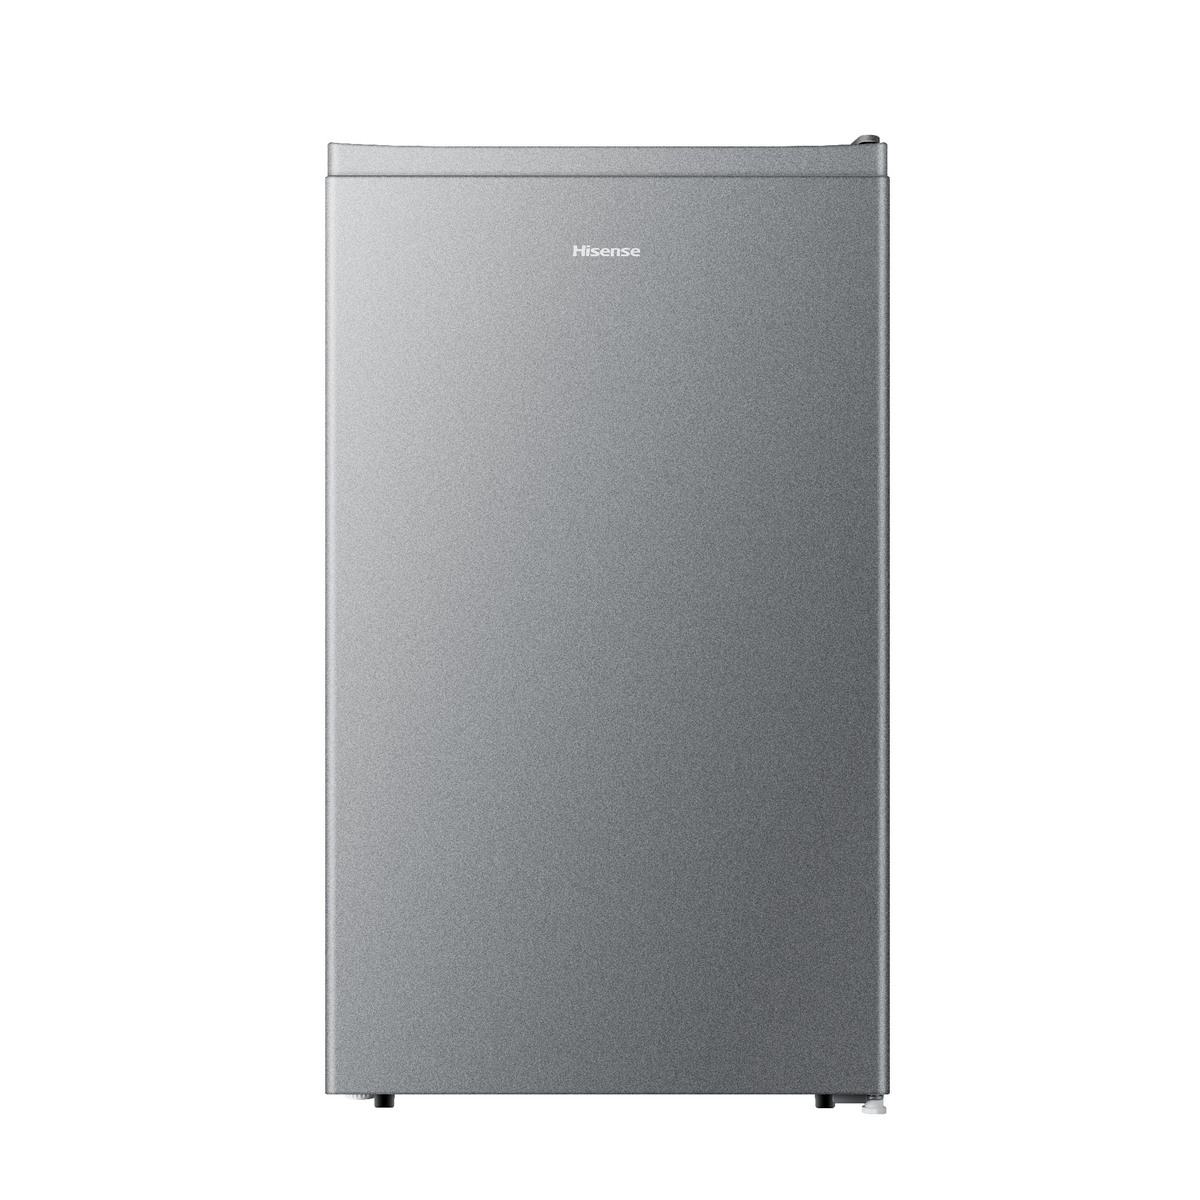 Hisense Single Door Refrigerator RR122D4ASU 122Ltr